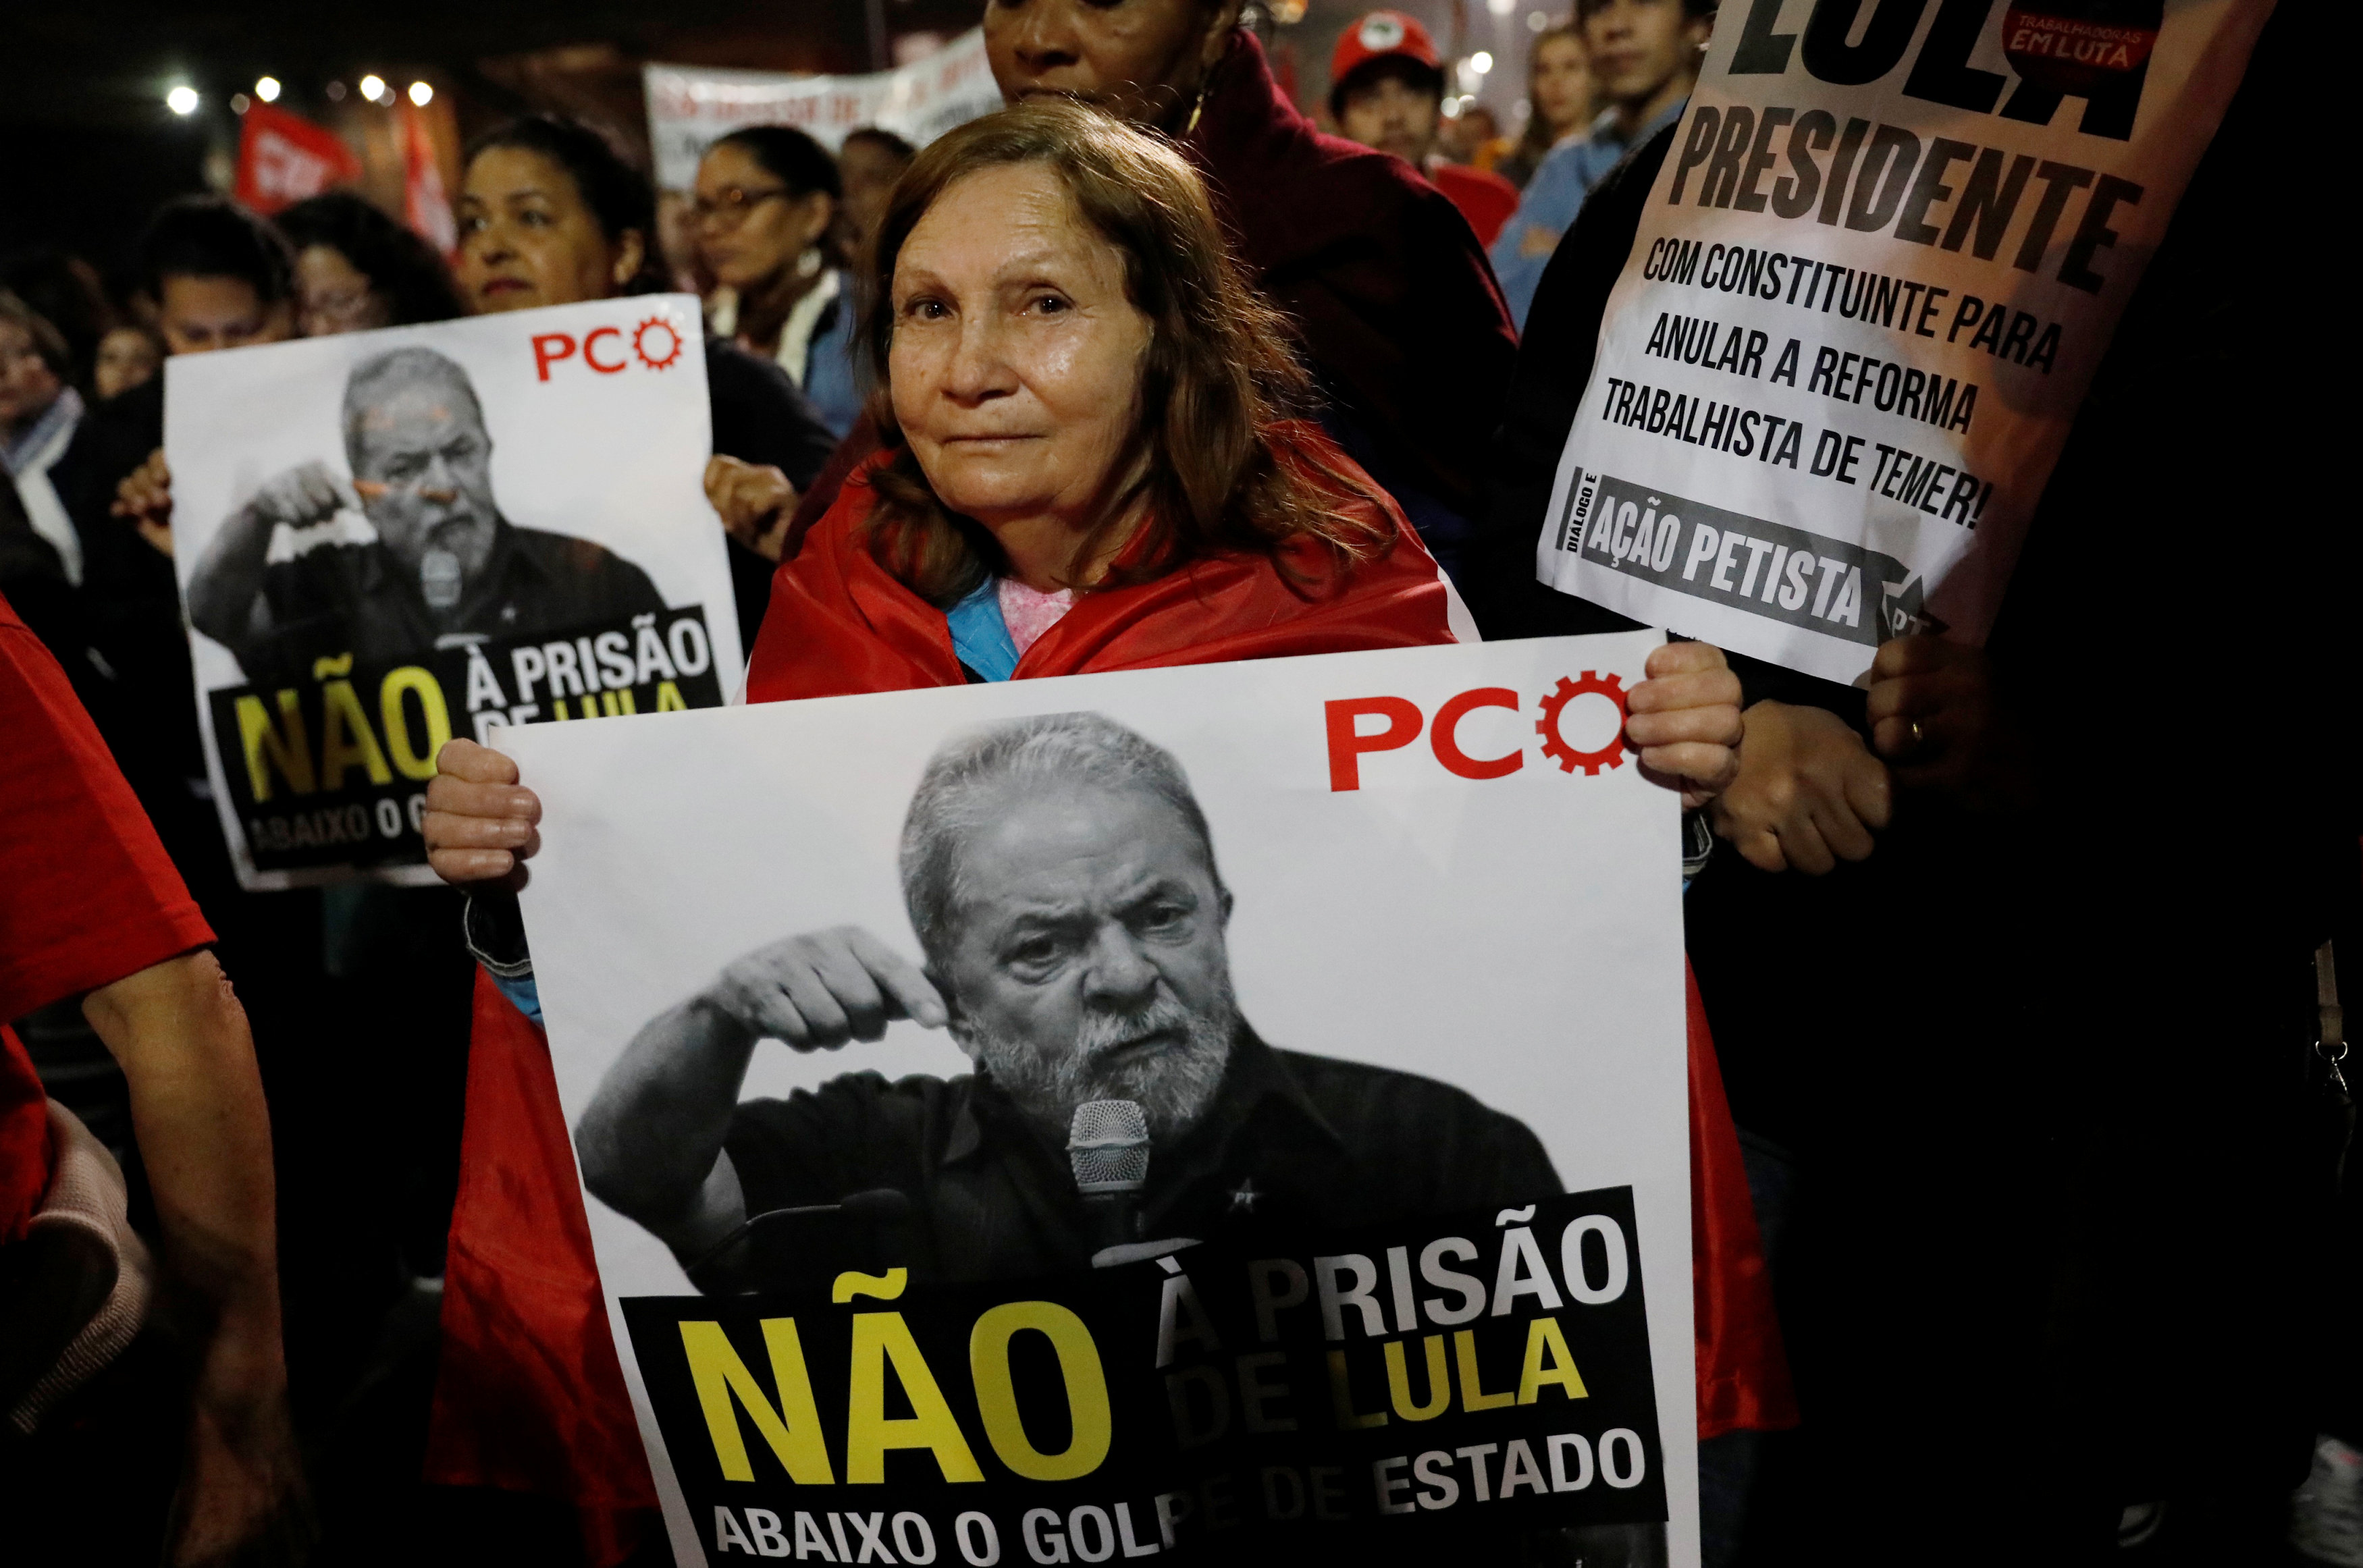 Lula ha denunciado una persecución judicial en su contra para impedir su candidatura para las elecciones presidenciales de 2018.